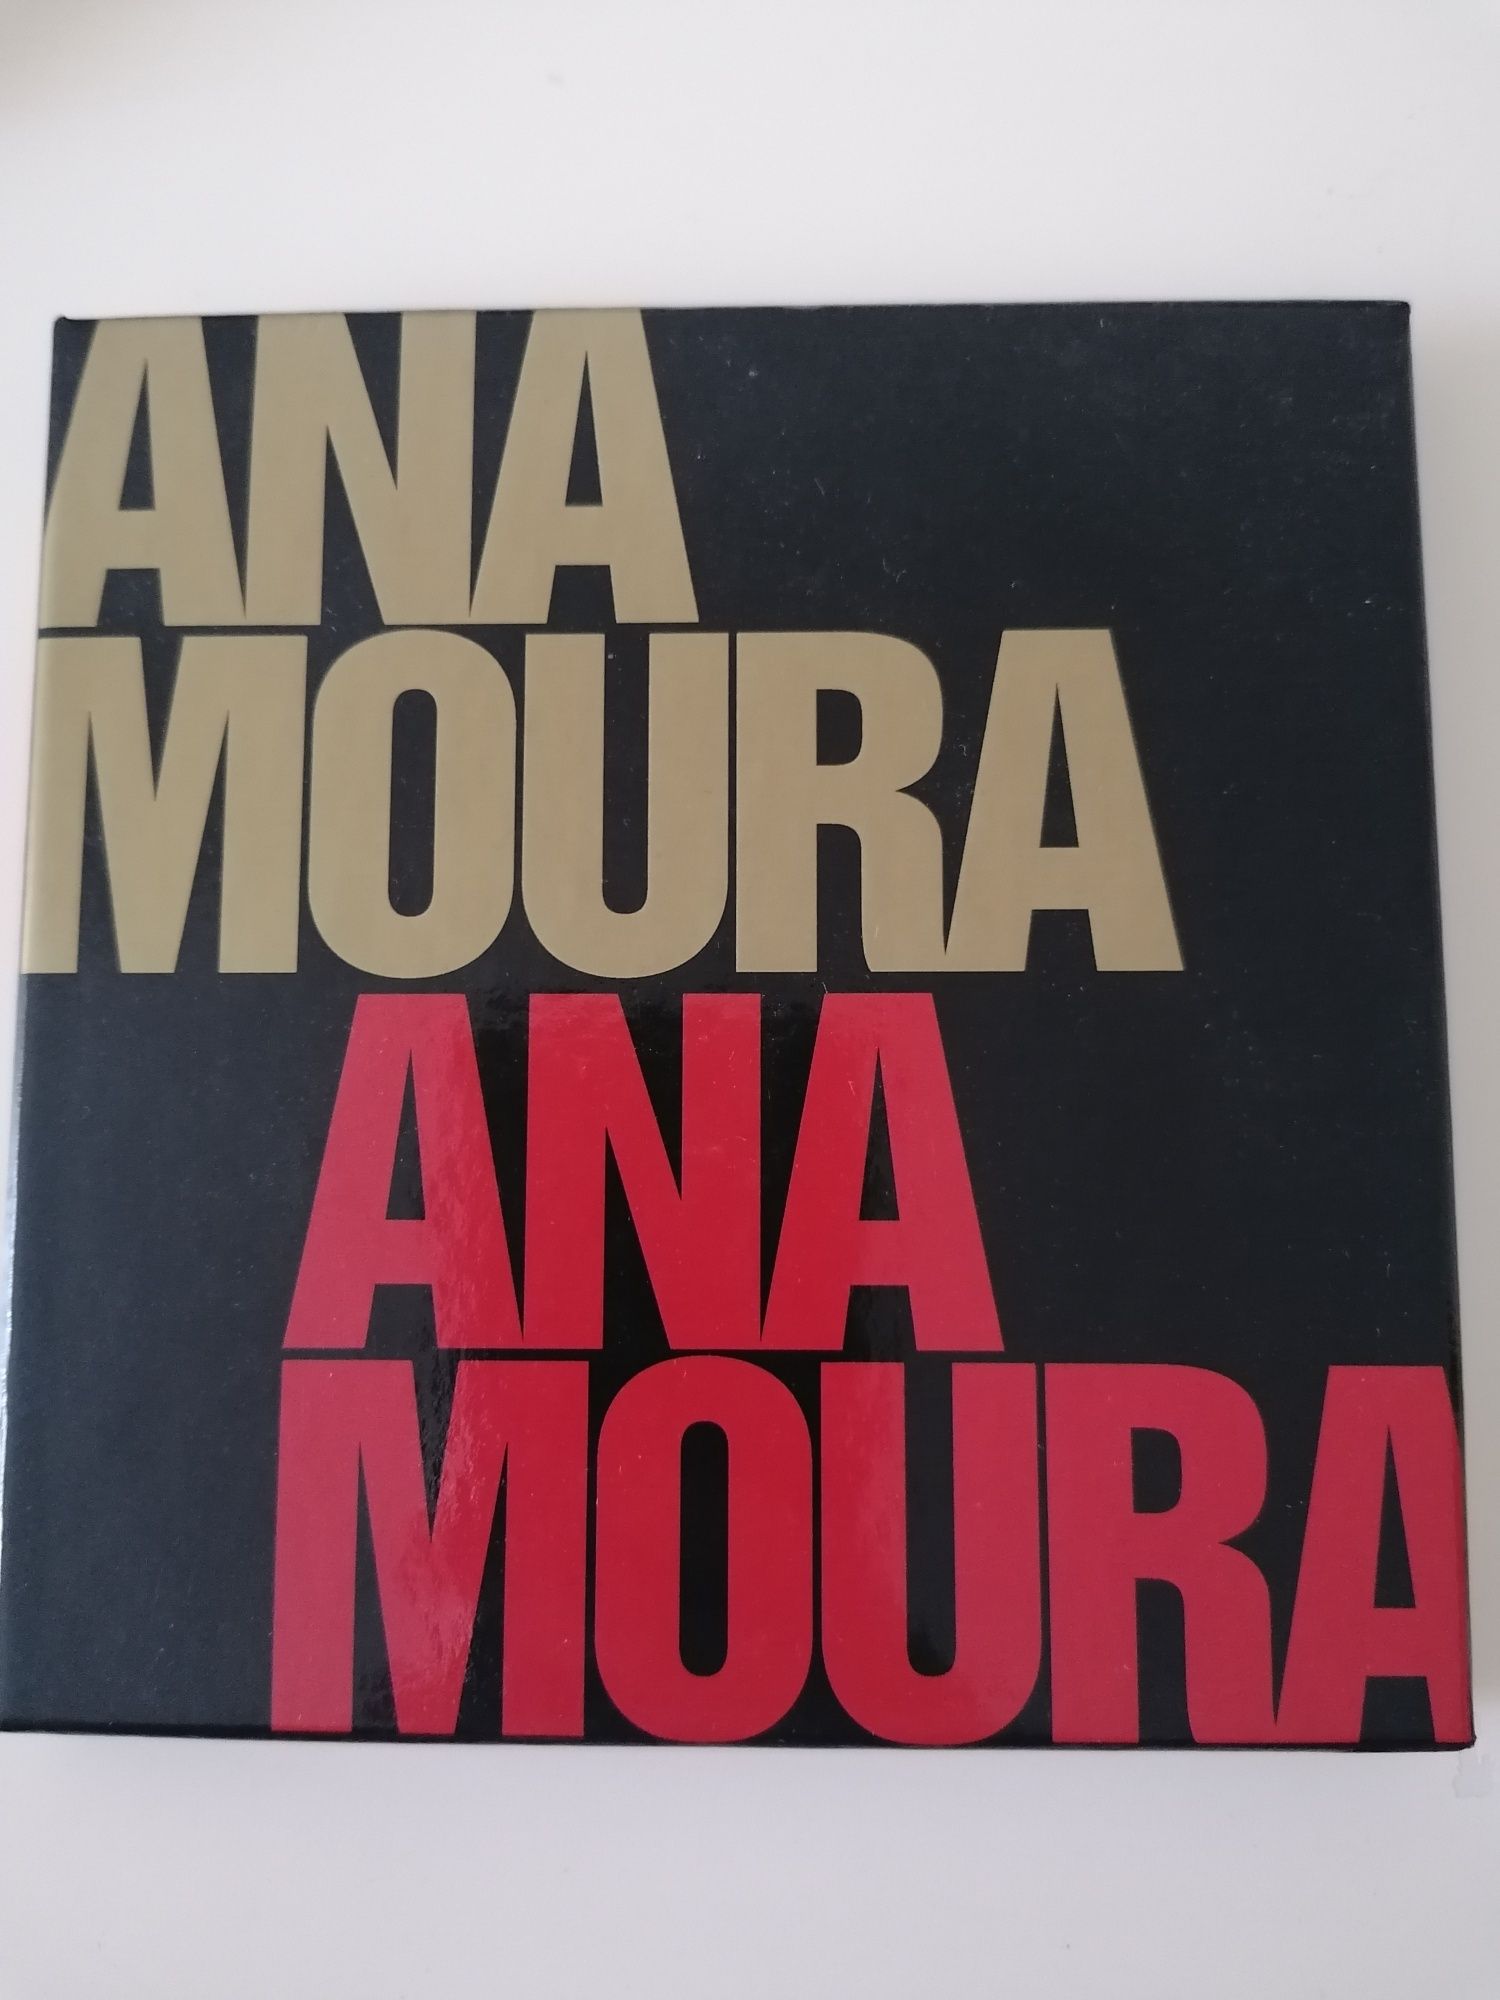 Coletânea Ana Moura